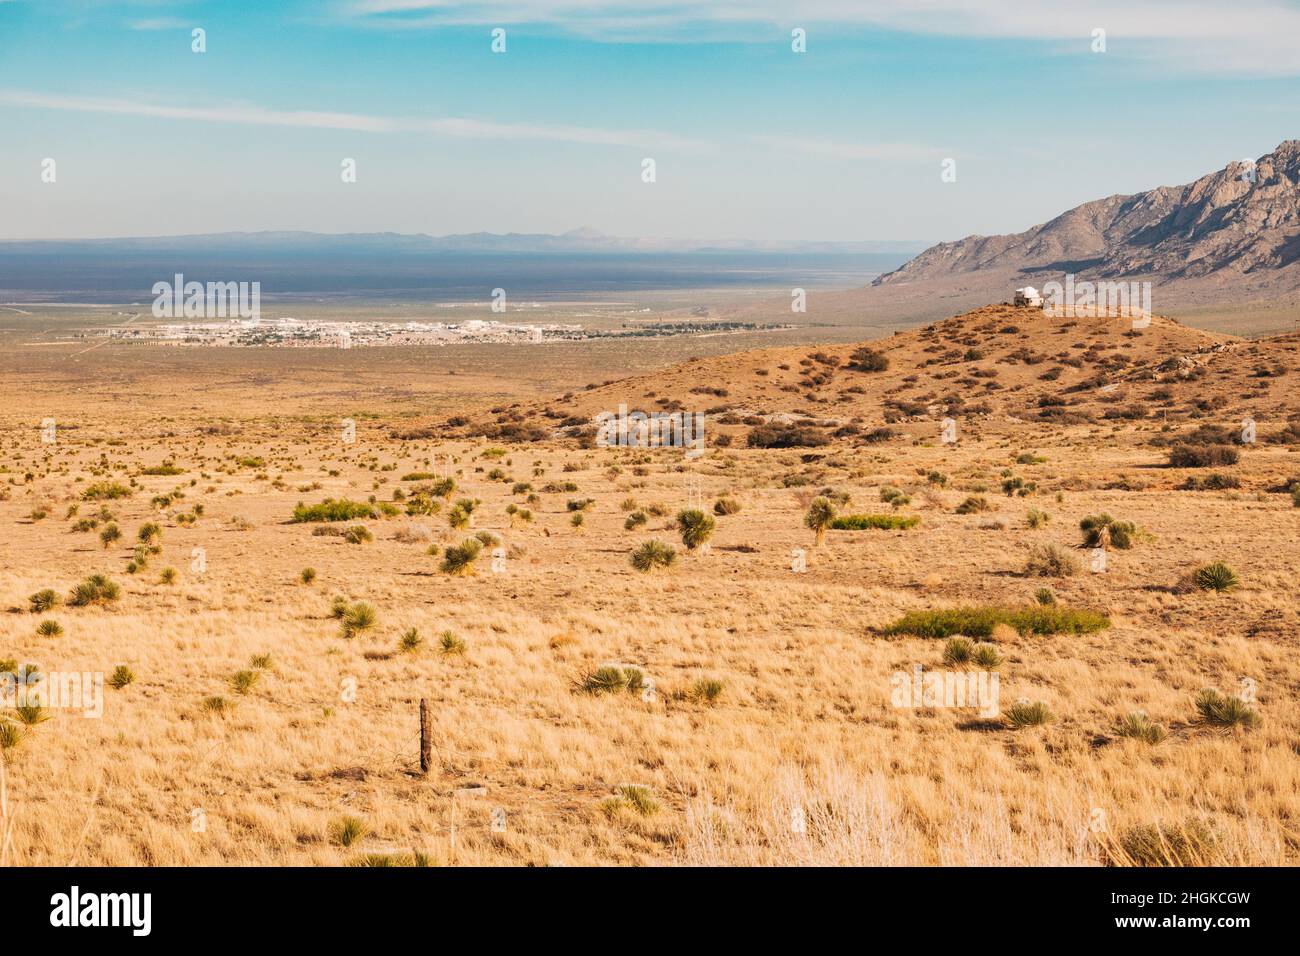 Das Township der White Sands Missile Range, ein Testgelände der US-Armee, in New Mexico, USA, von der Autobahn aus gesehen Stockfoto